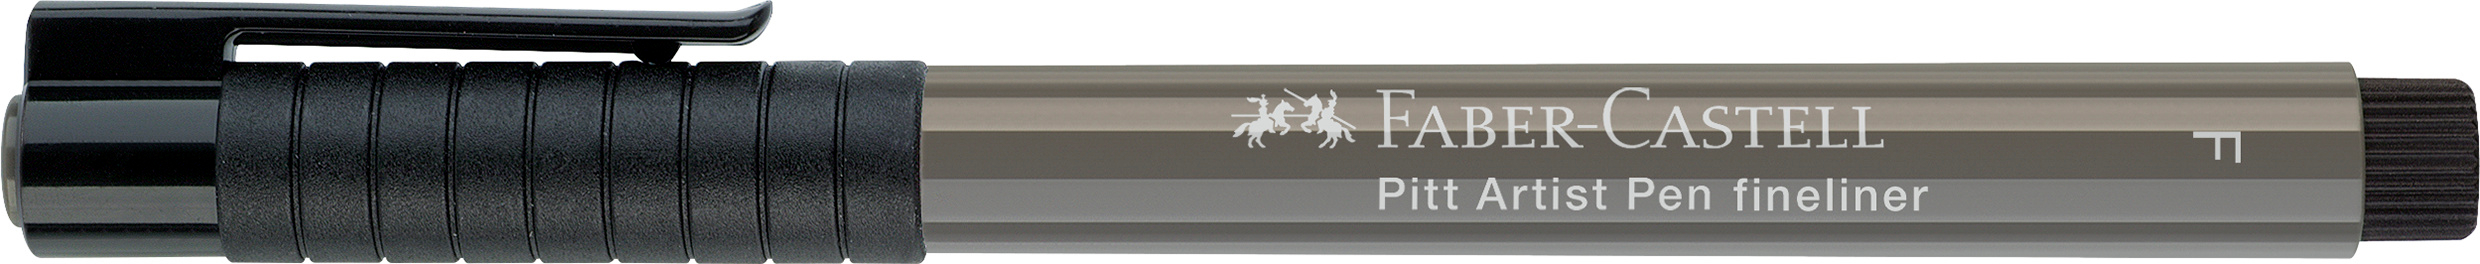 FABER-CASTELL Artist Pen Fineliner 0.5mm 167273 gris chaud gris chaud